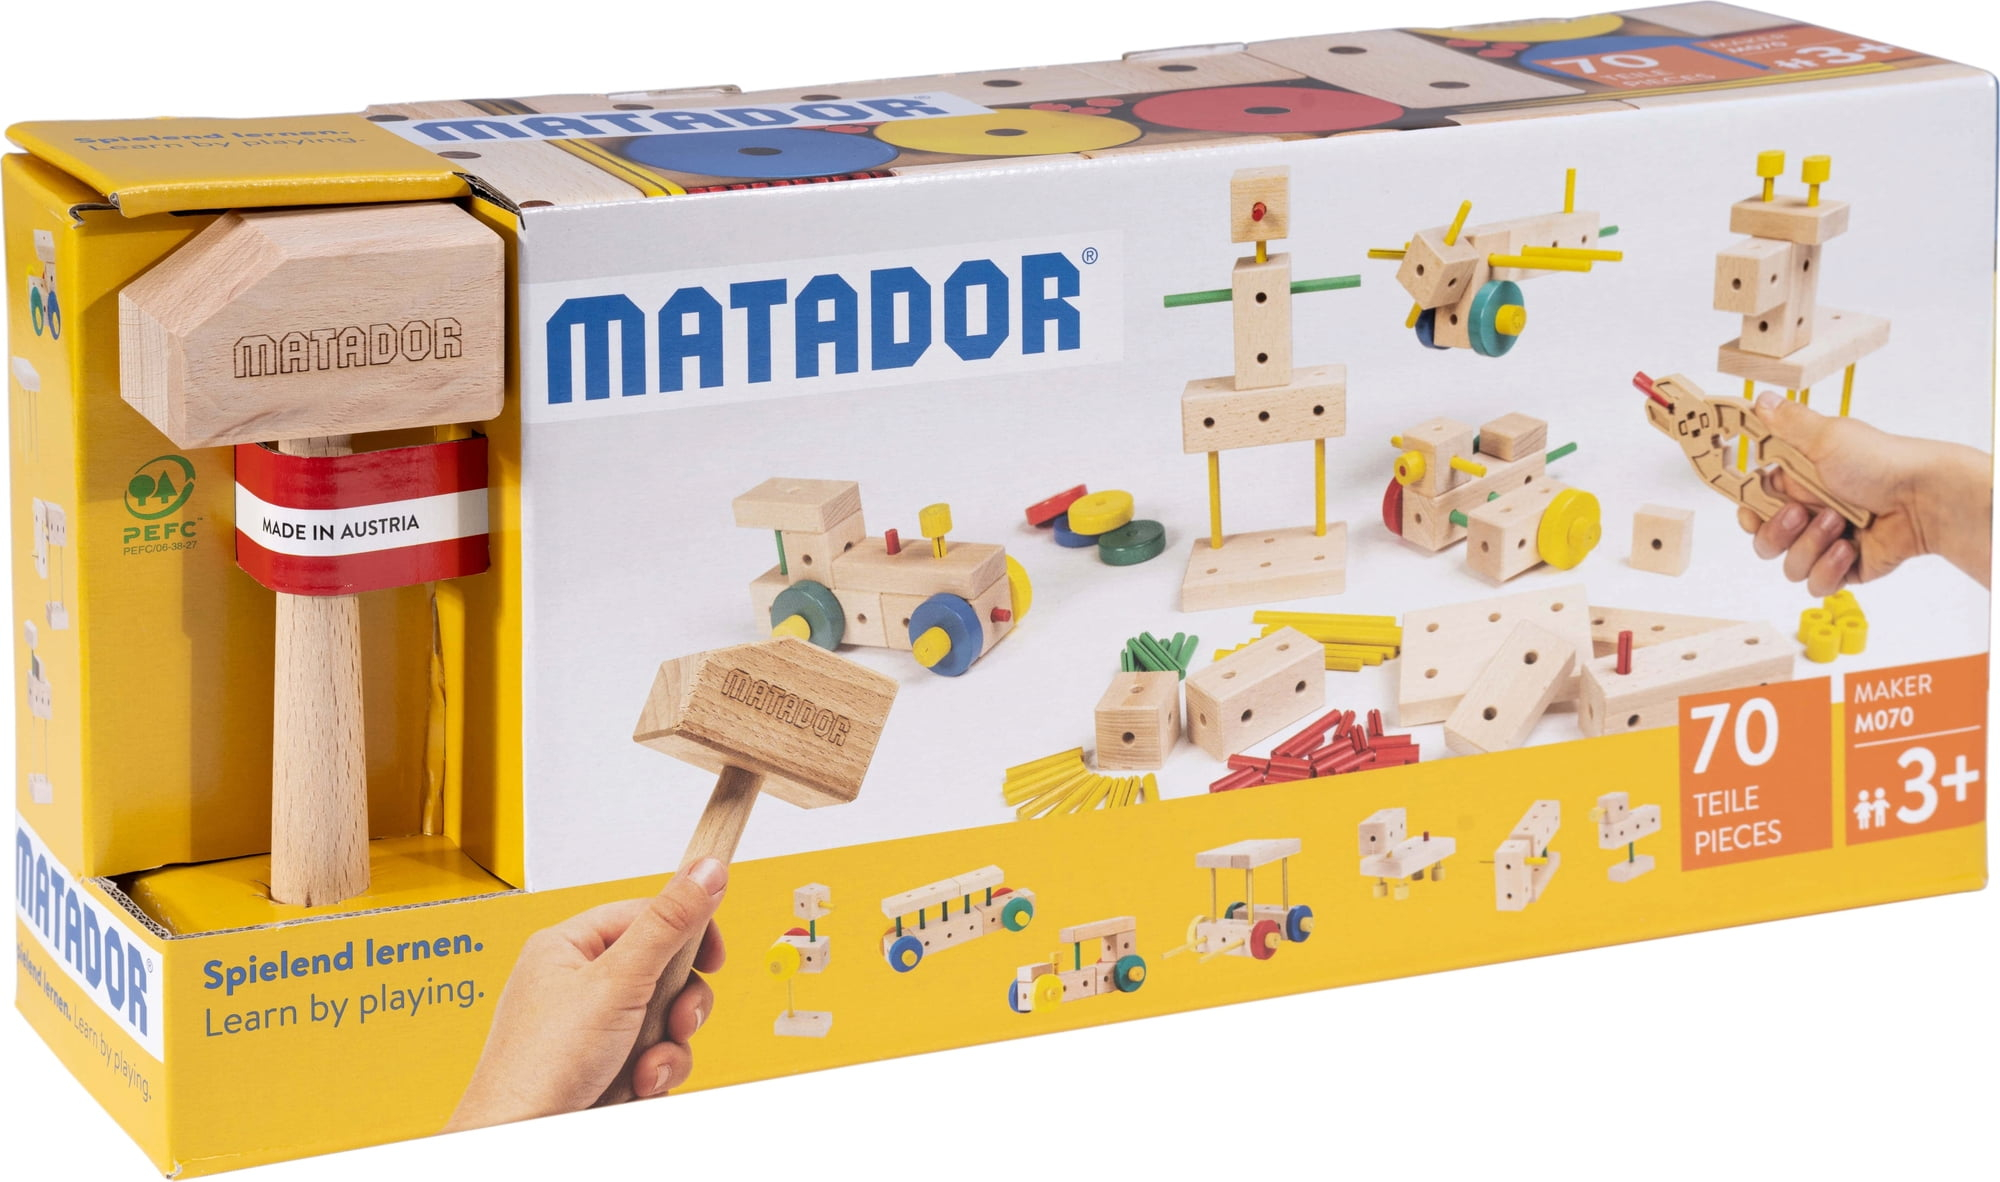 MATADOR Baukasten "Maker M070"